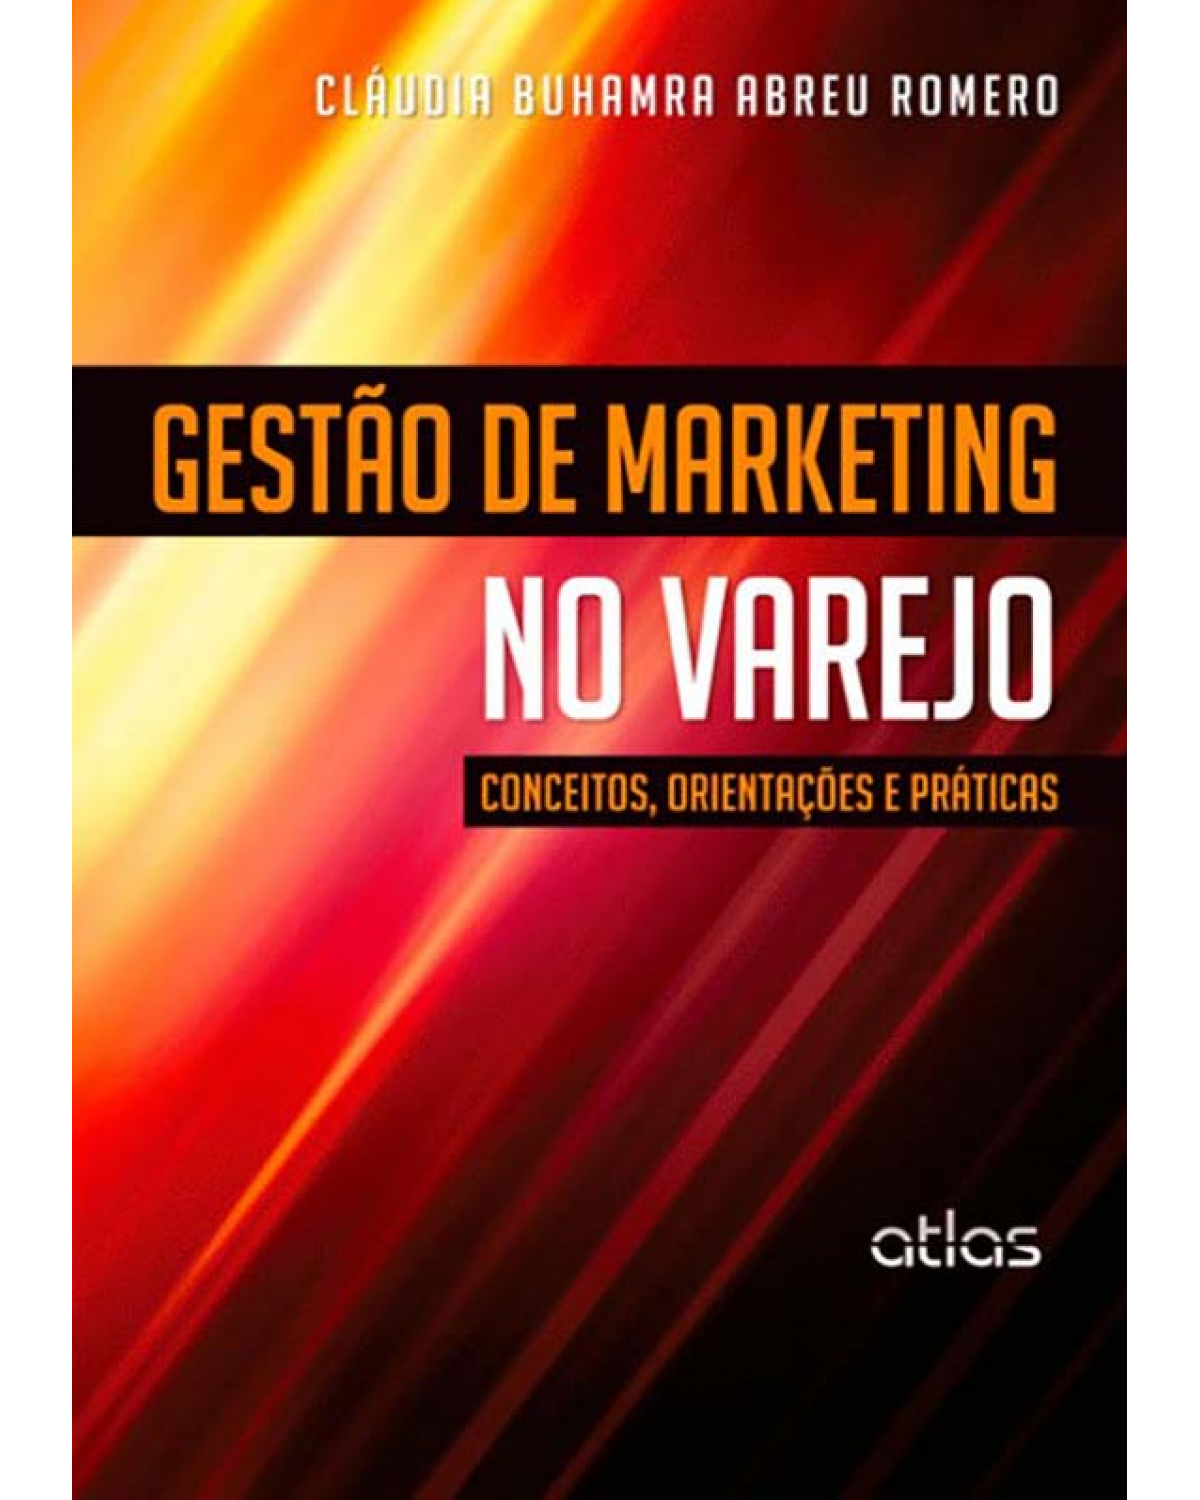 Gestão de marketing no varejo - Conceitos, orientações e práticas - 1ª Edição | 2012